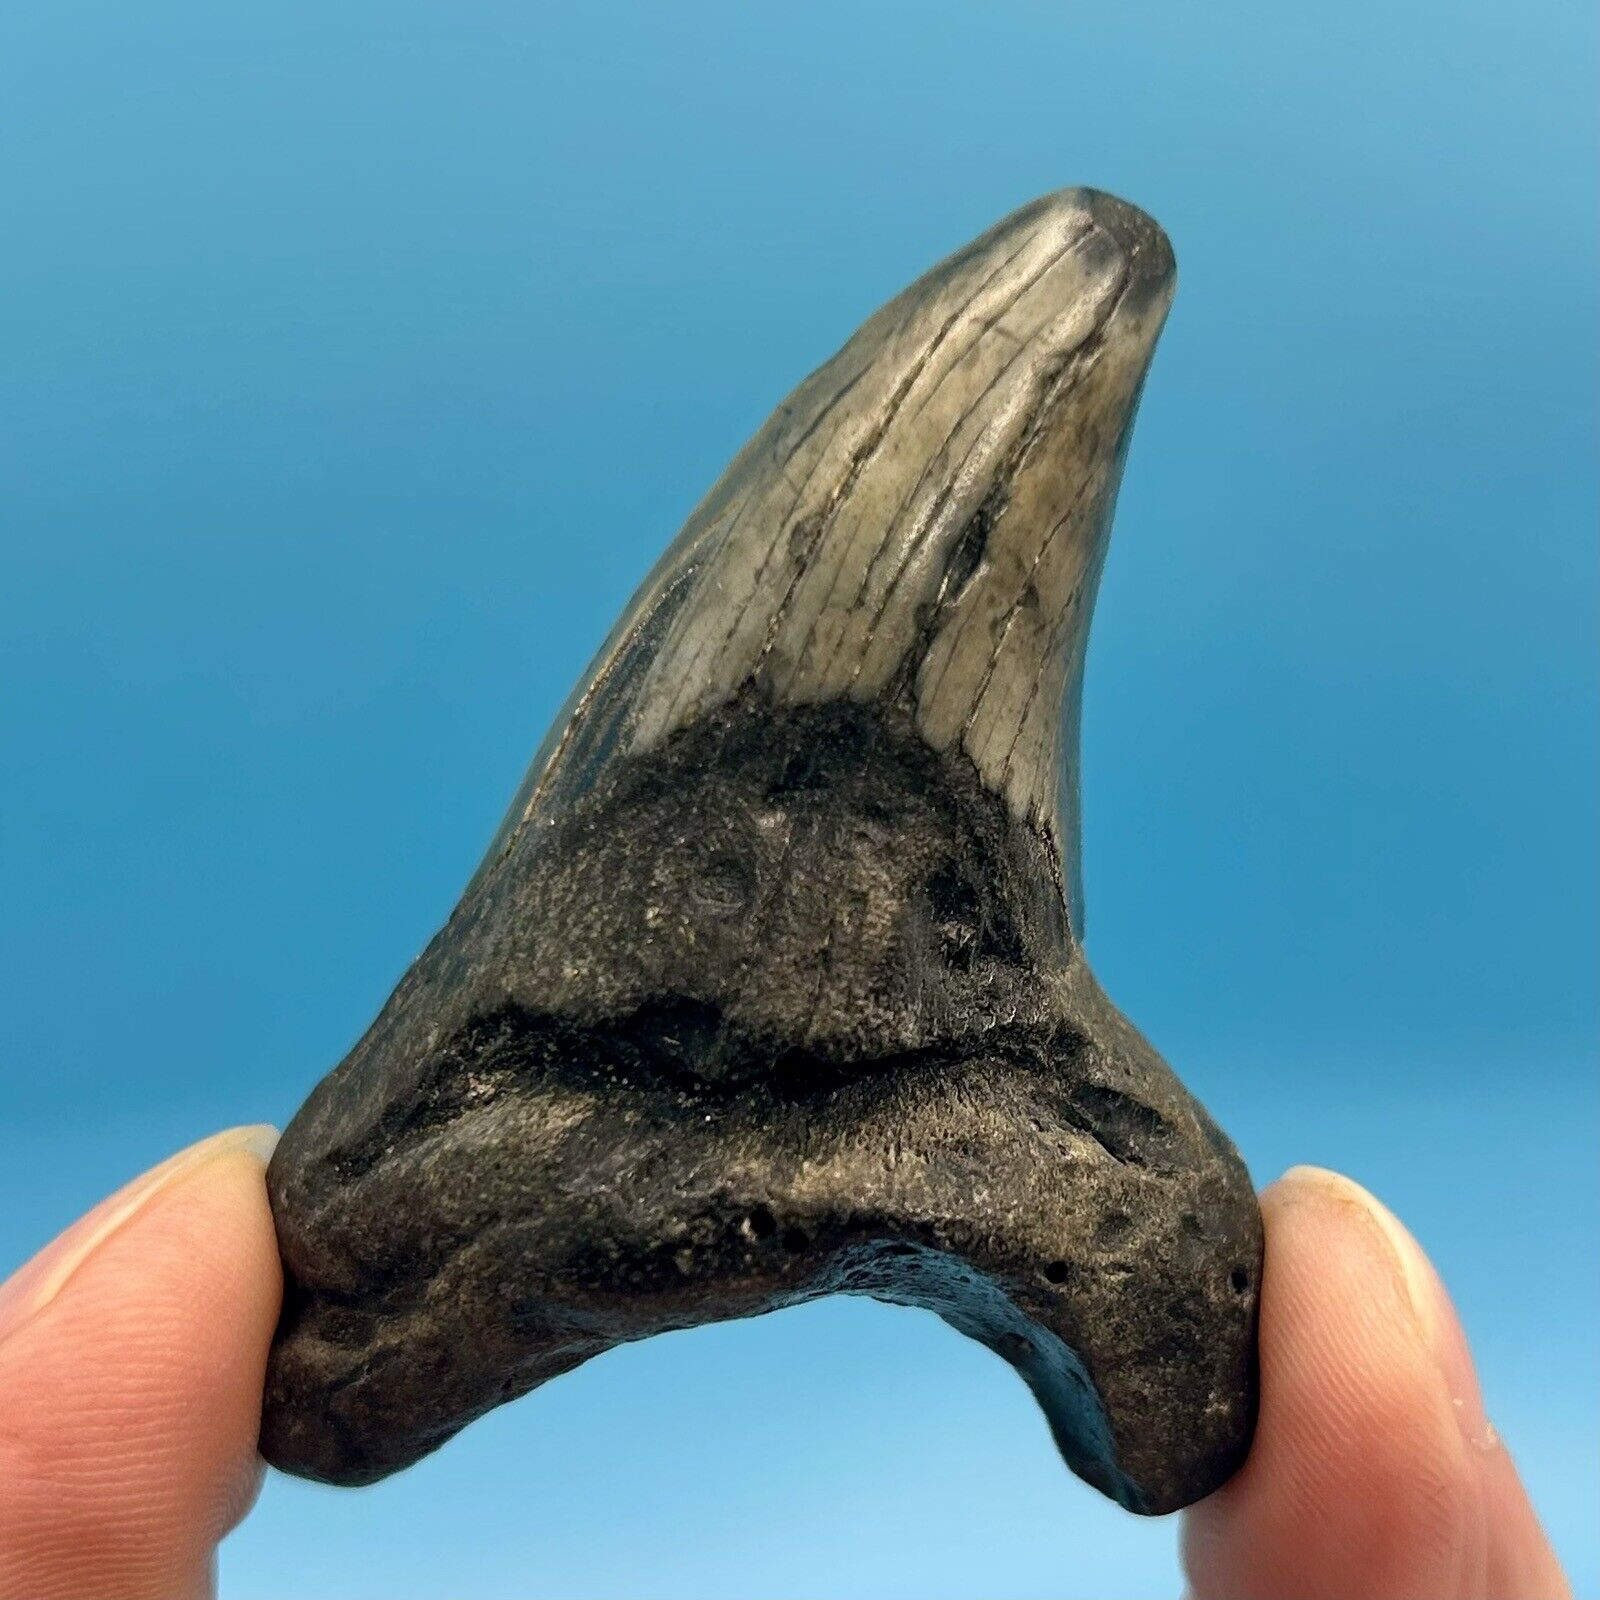 2.51” Benedini Shark Tooth - Beautiful Enamel Color - No Restoration or Repair